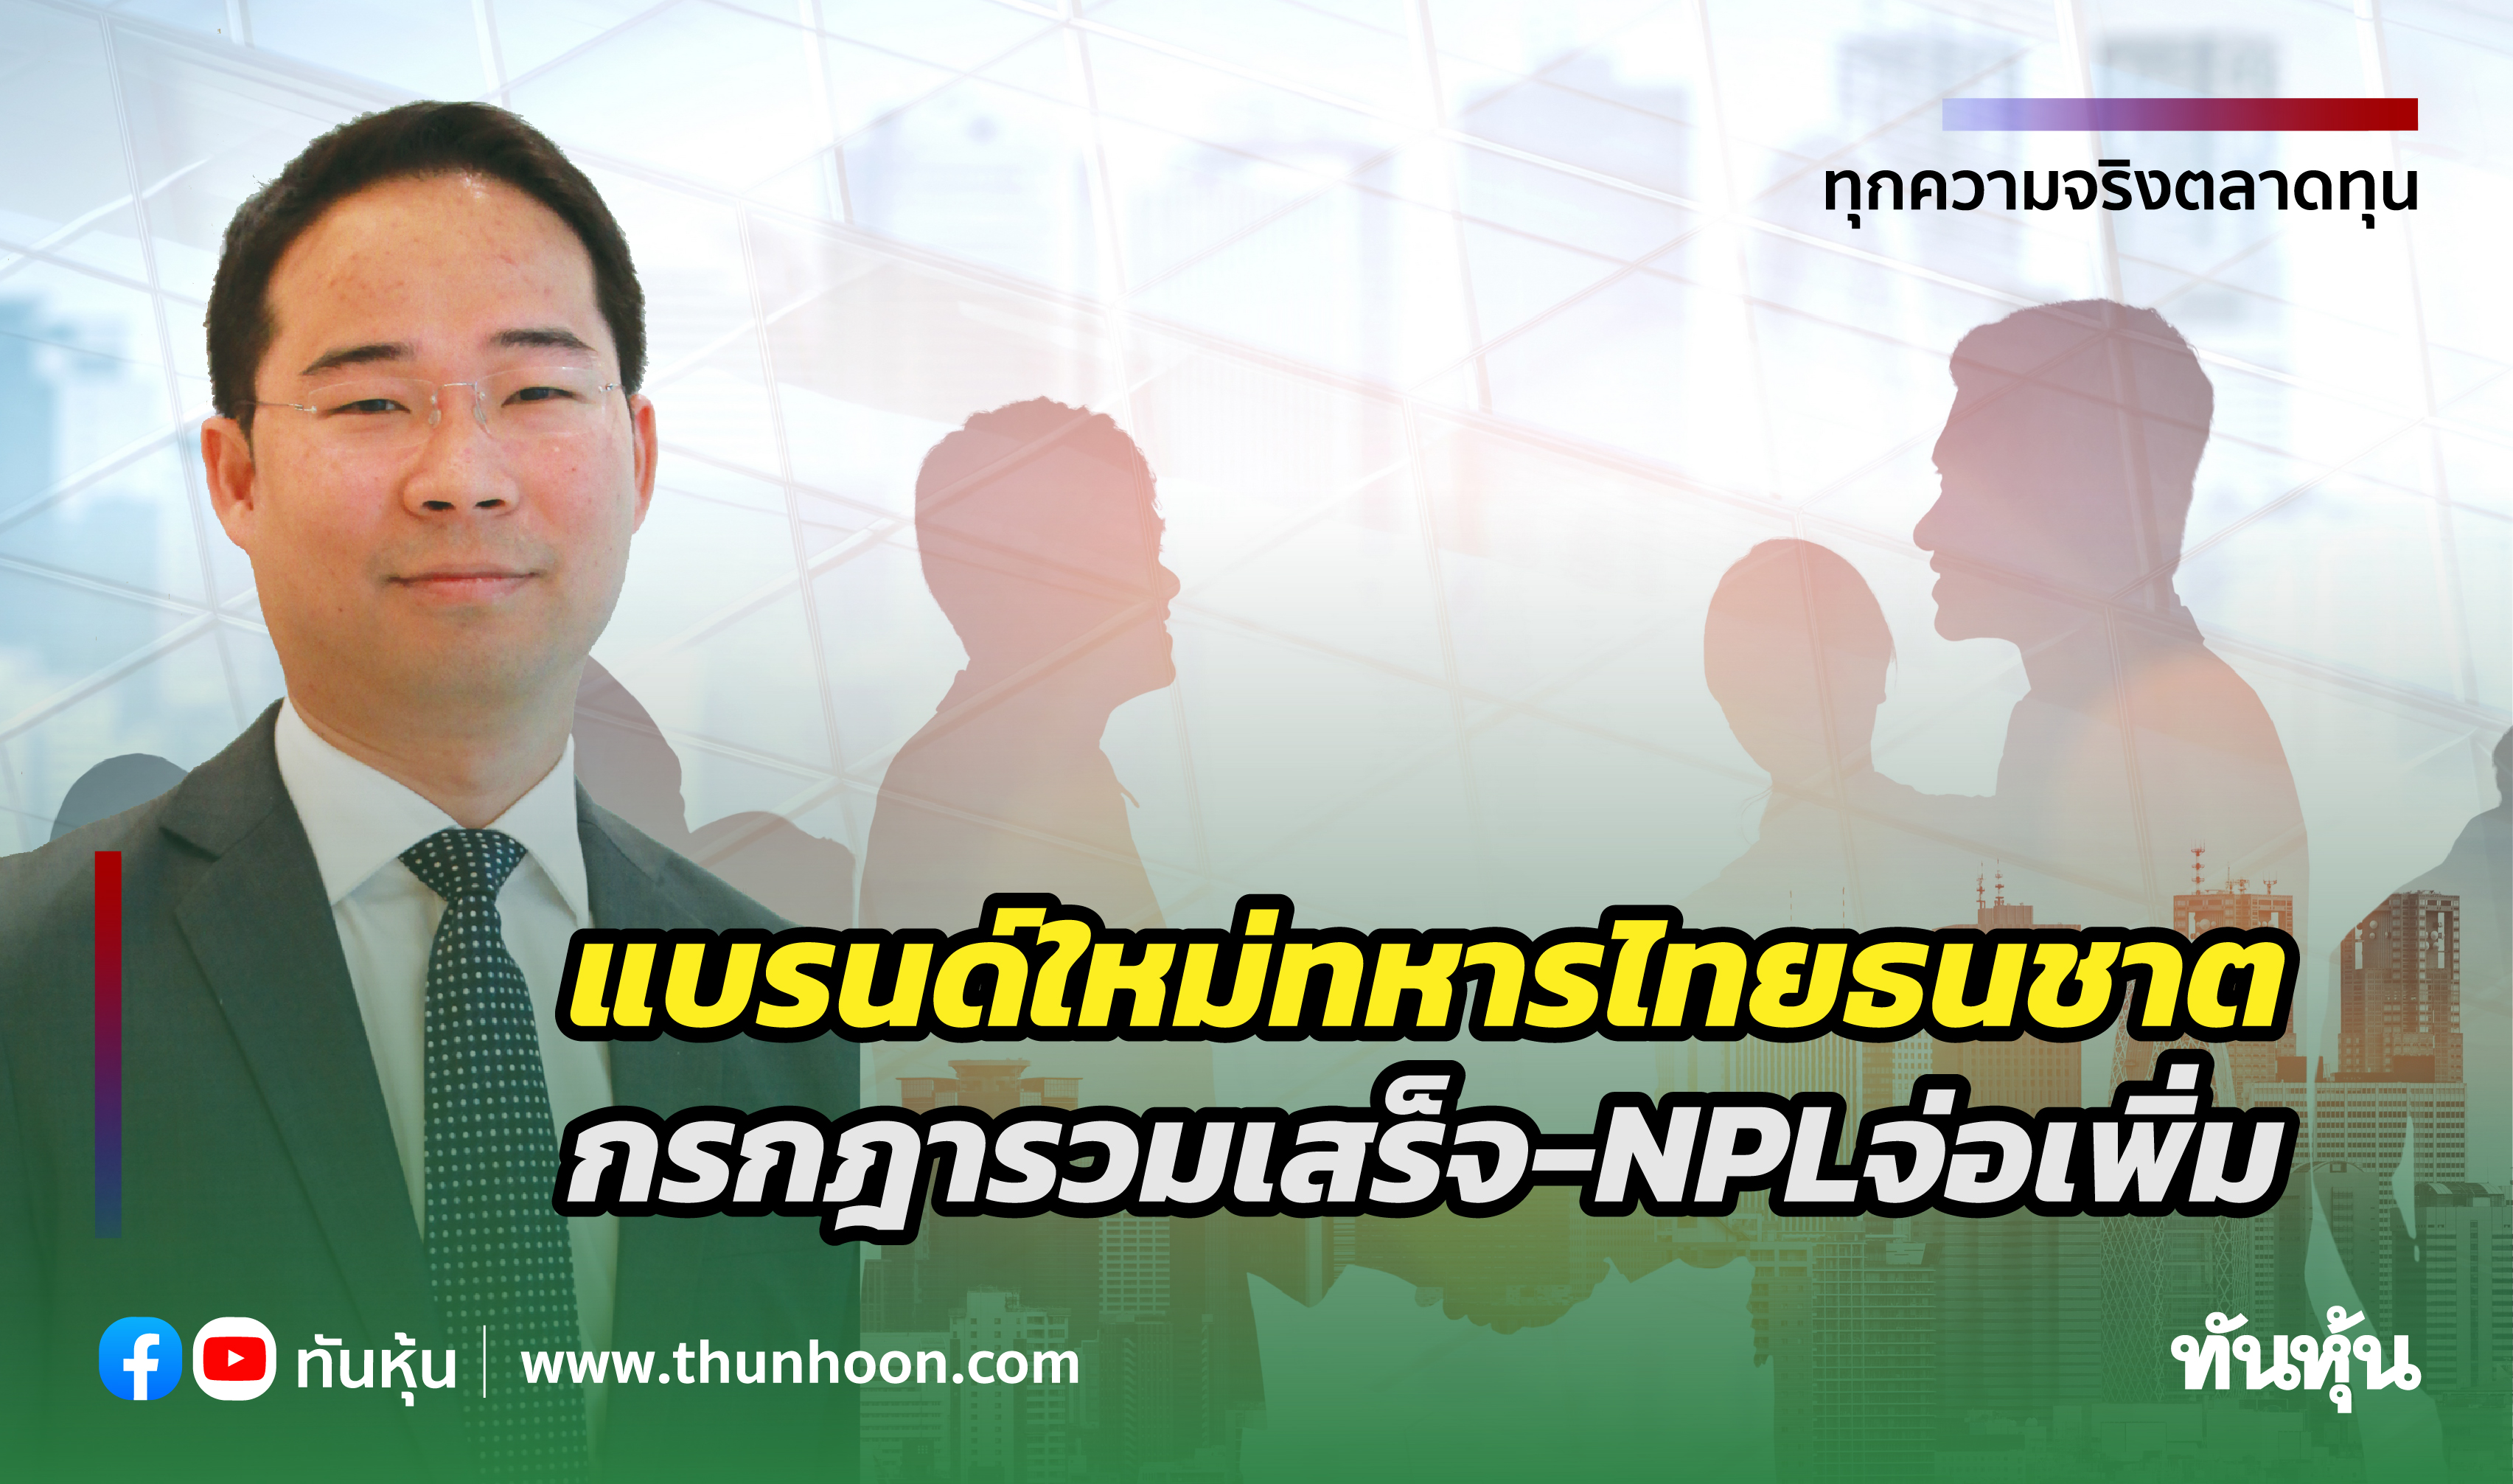  แบรนด์ใหม่ "ทหารไทยธนชาต" กรกฎารวมเสร็จ-NPLจ่อเพิ่ม